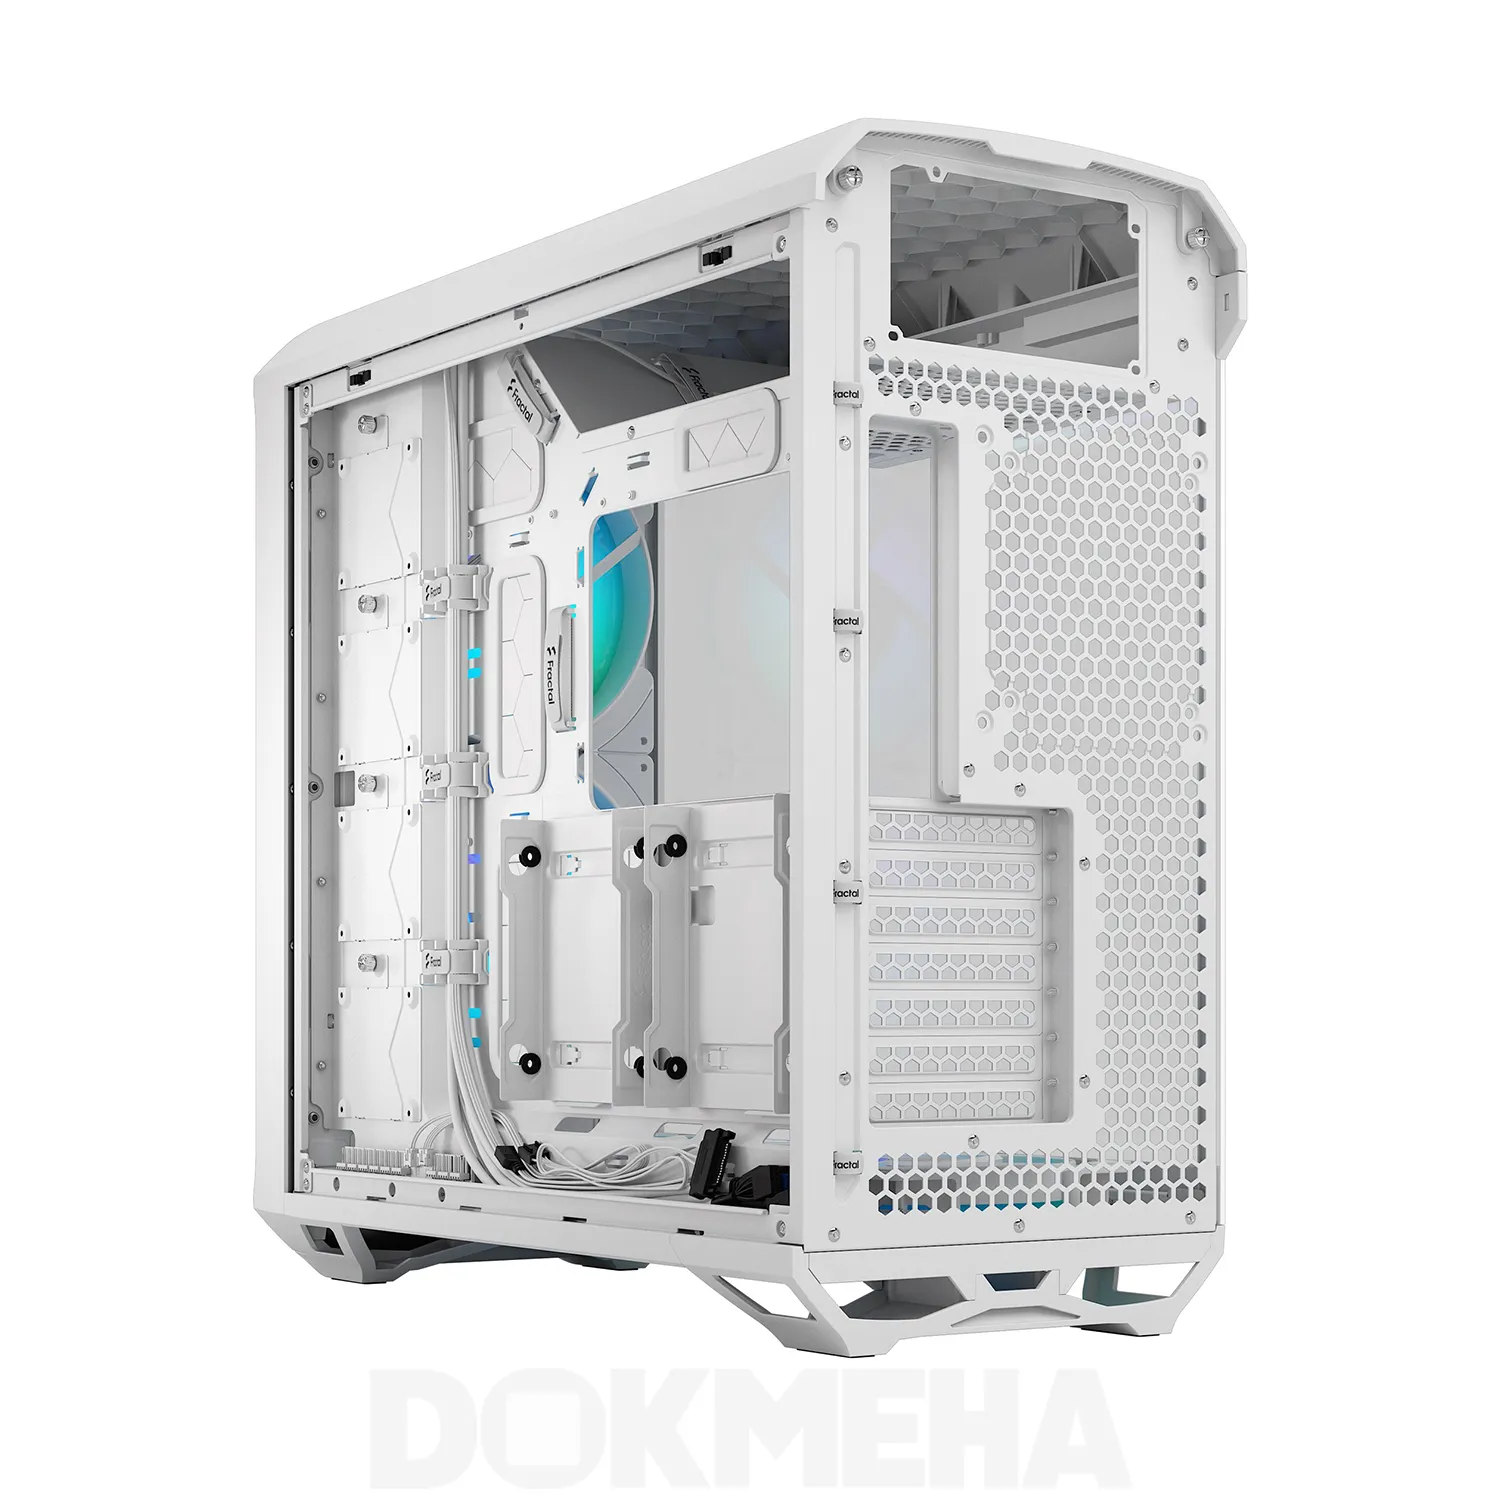 نمای باز پشت چپ - رنگ سفید - کیس ورک استیشن DOKMEHA W20000 Intel Xeon - 3TH GEN